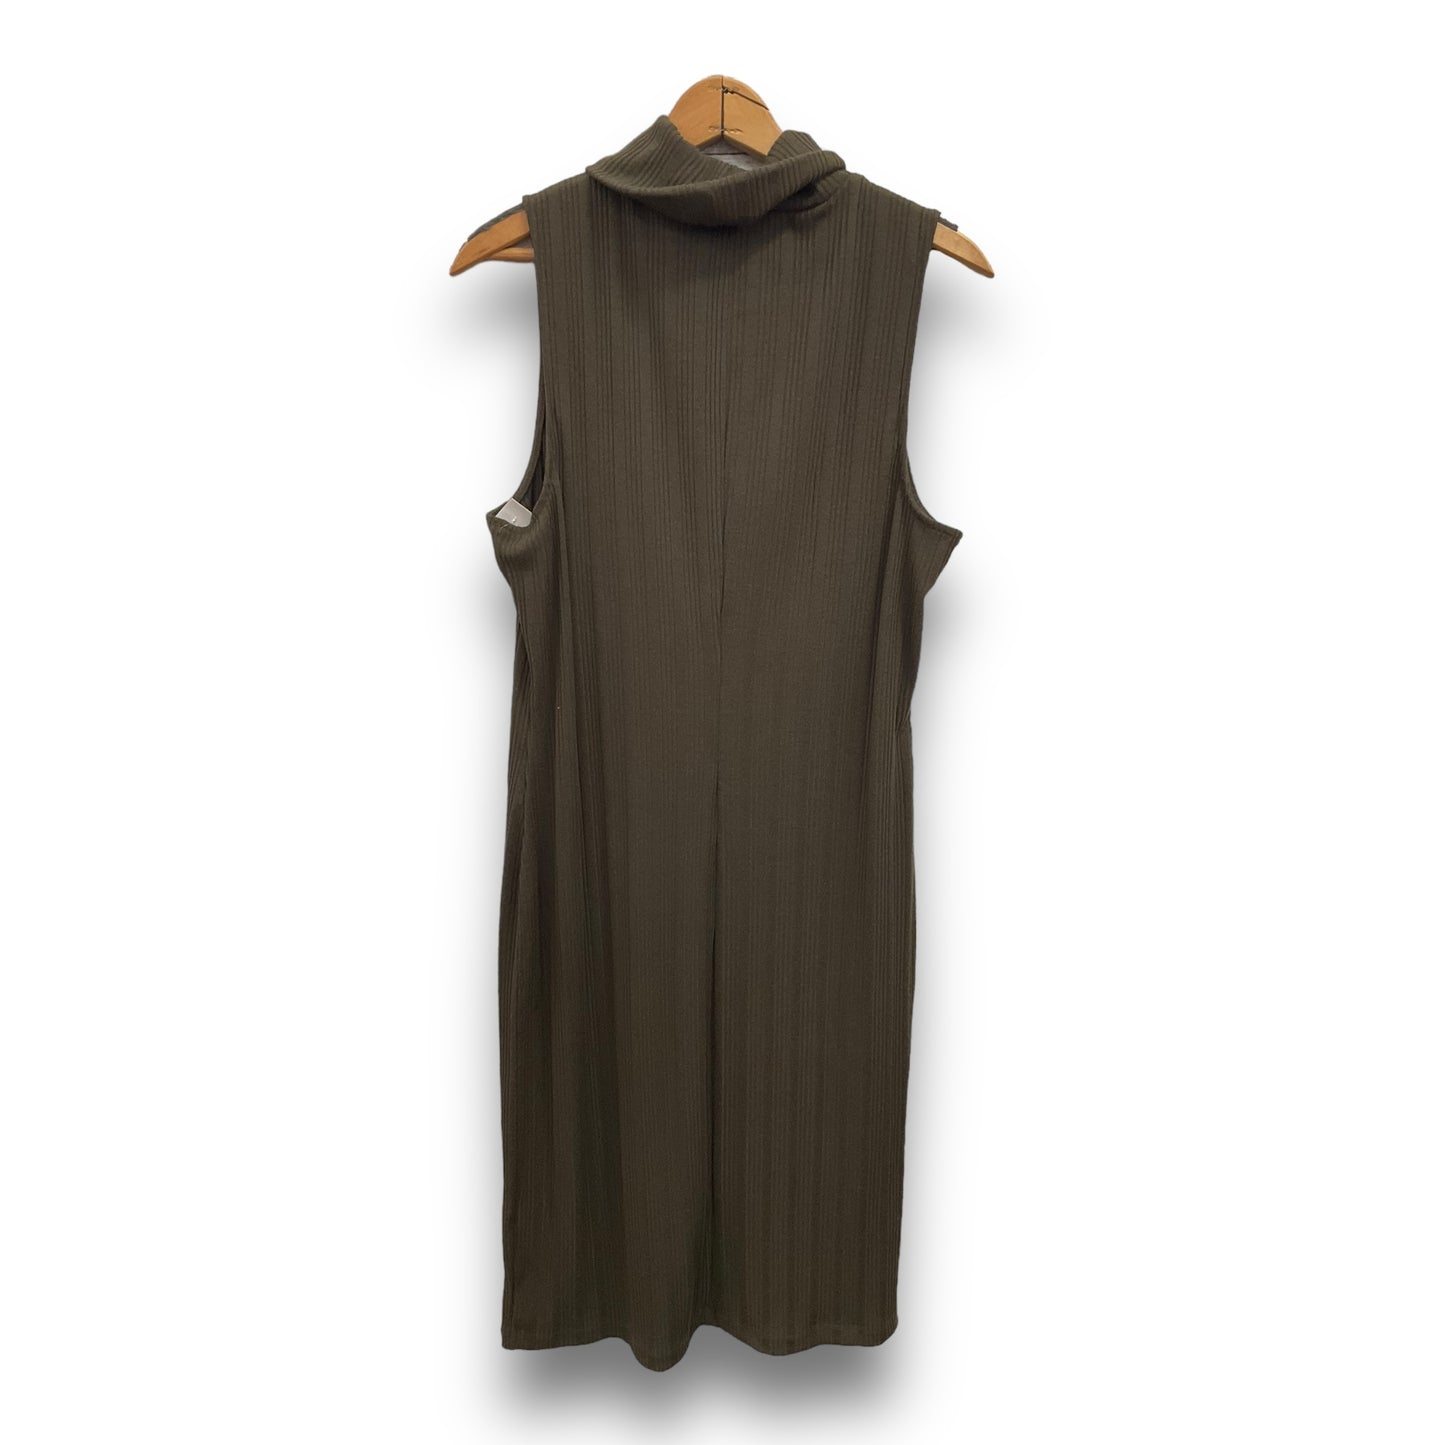 Dress Casual Midi By Nine West Apparel  Size: Xxl